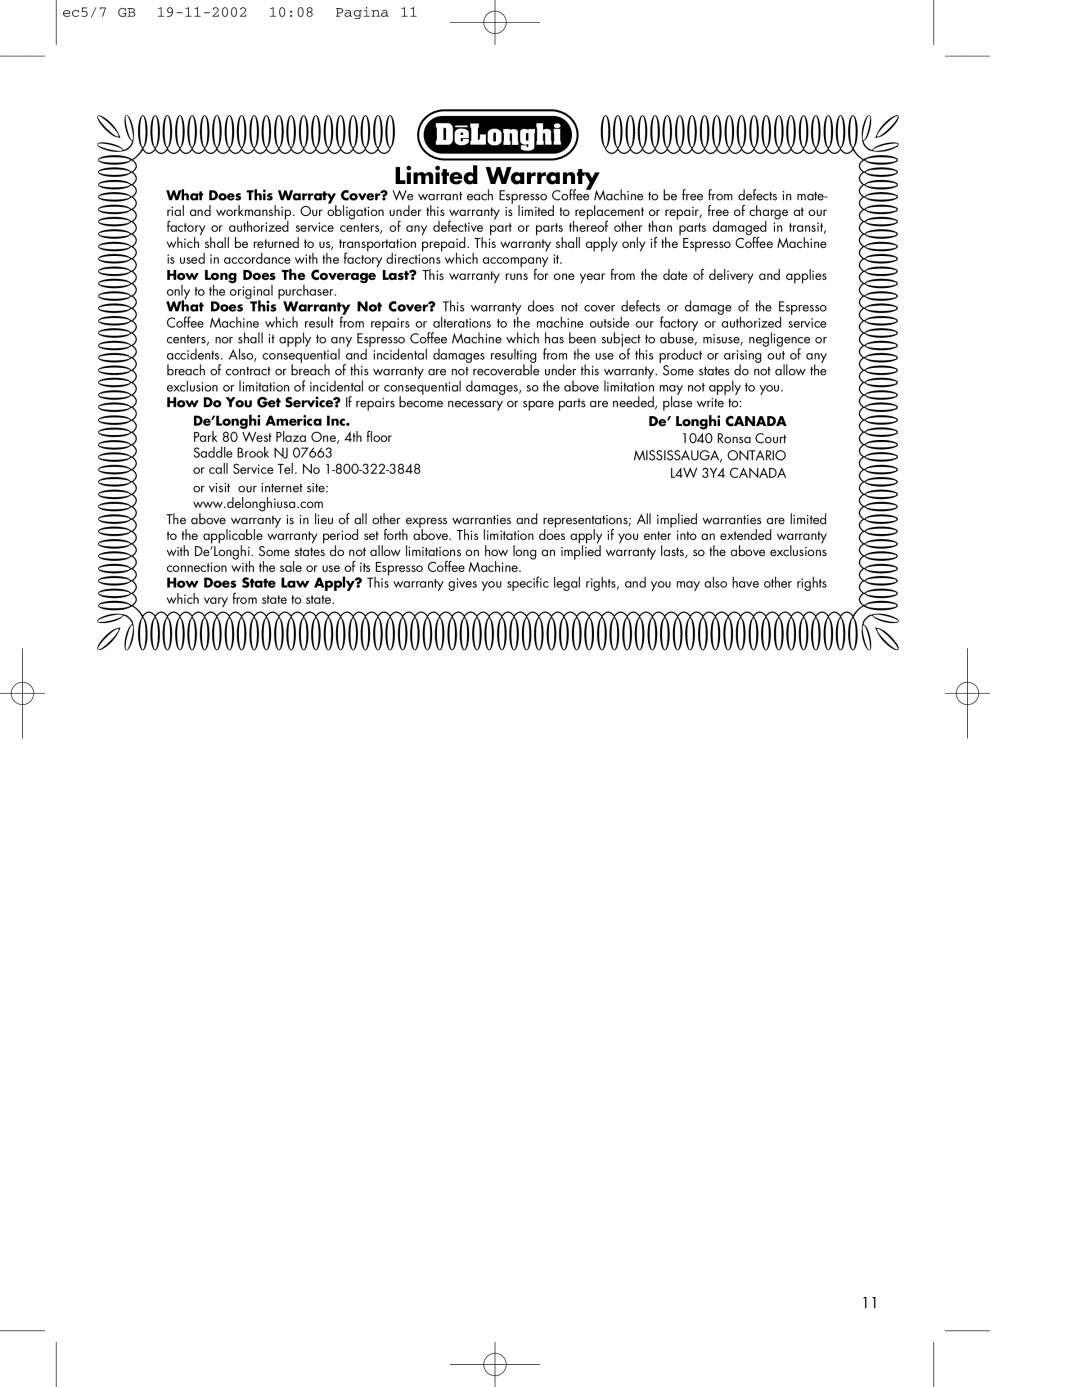 DeLonghi EC5, EC7 manual Limited Warranty, ec5/7 GB 19-11-200210 08 Pagina, De’Longhi America Inc, De’ Longhi CANADA 